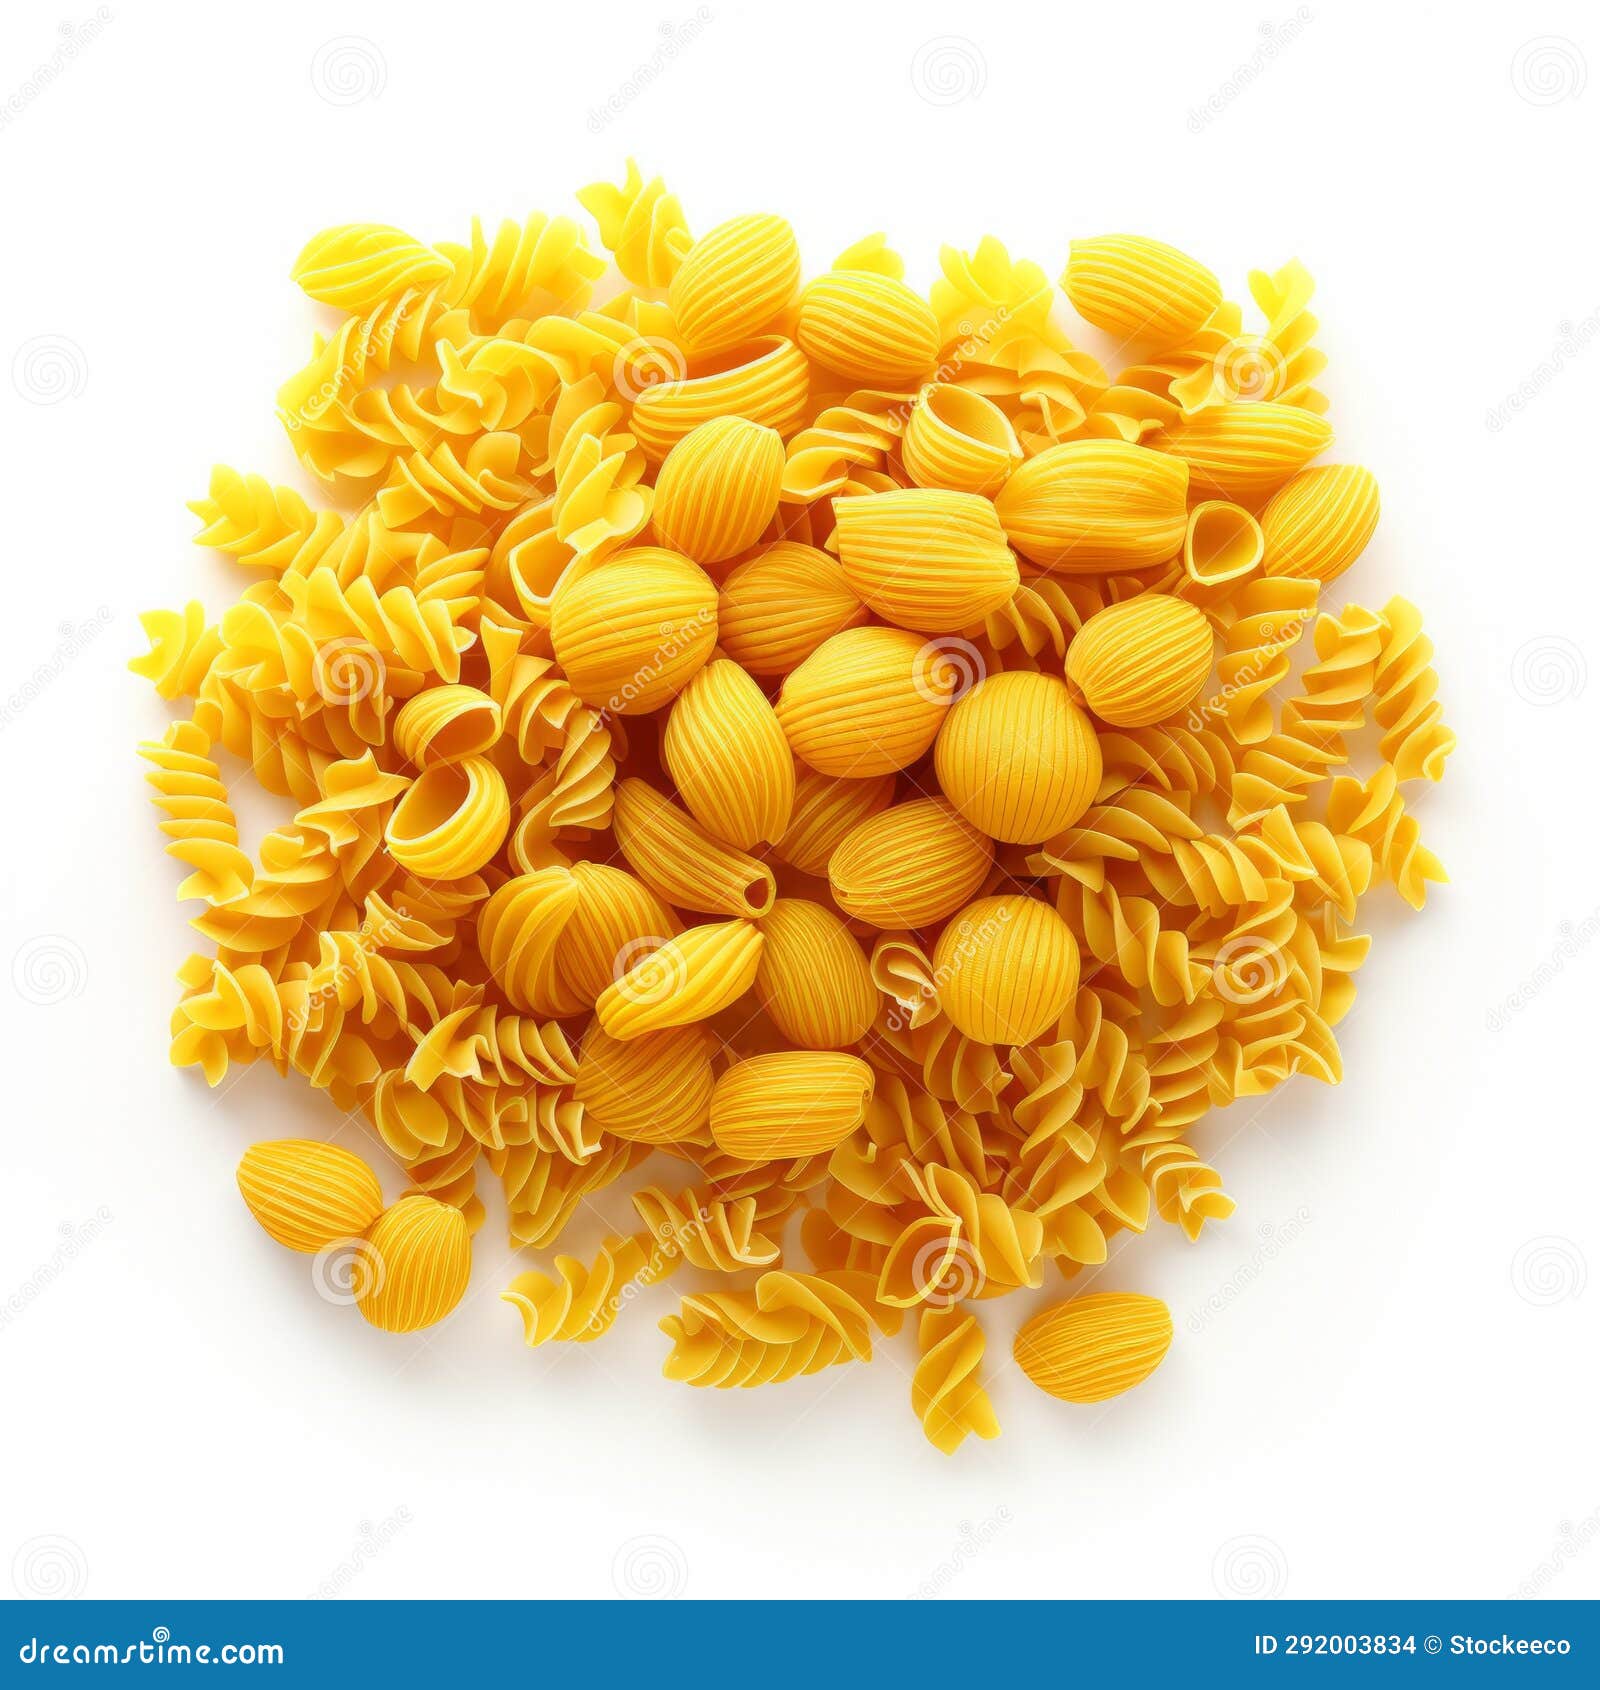 vibrant yellow pasta artwork on white background